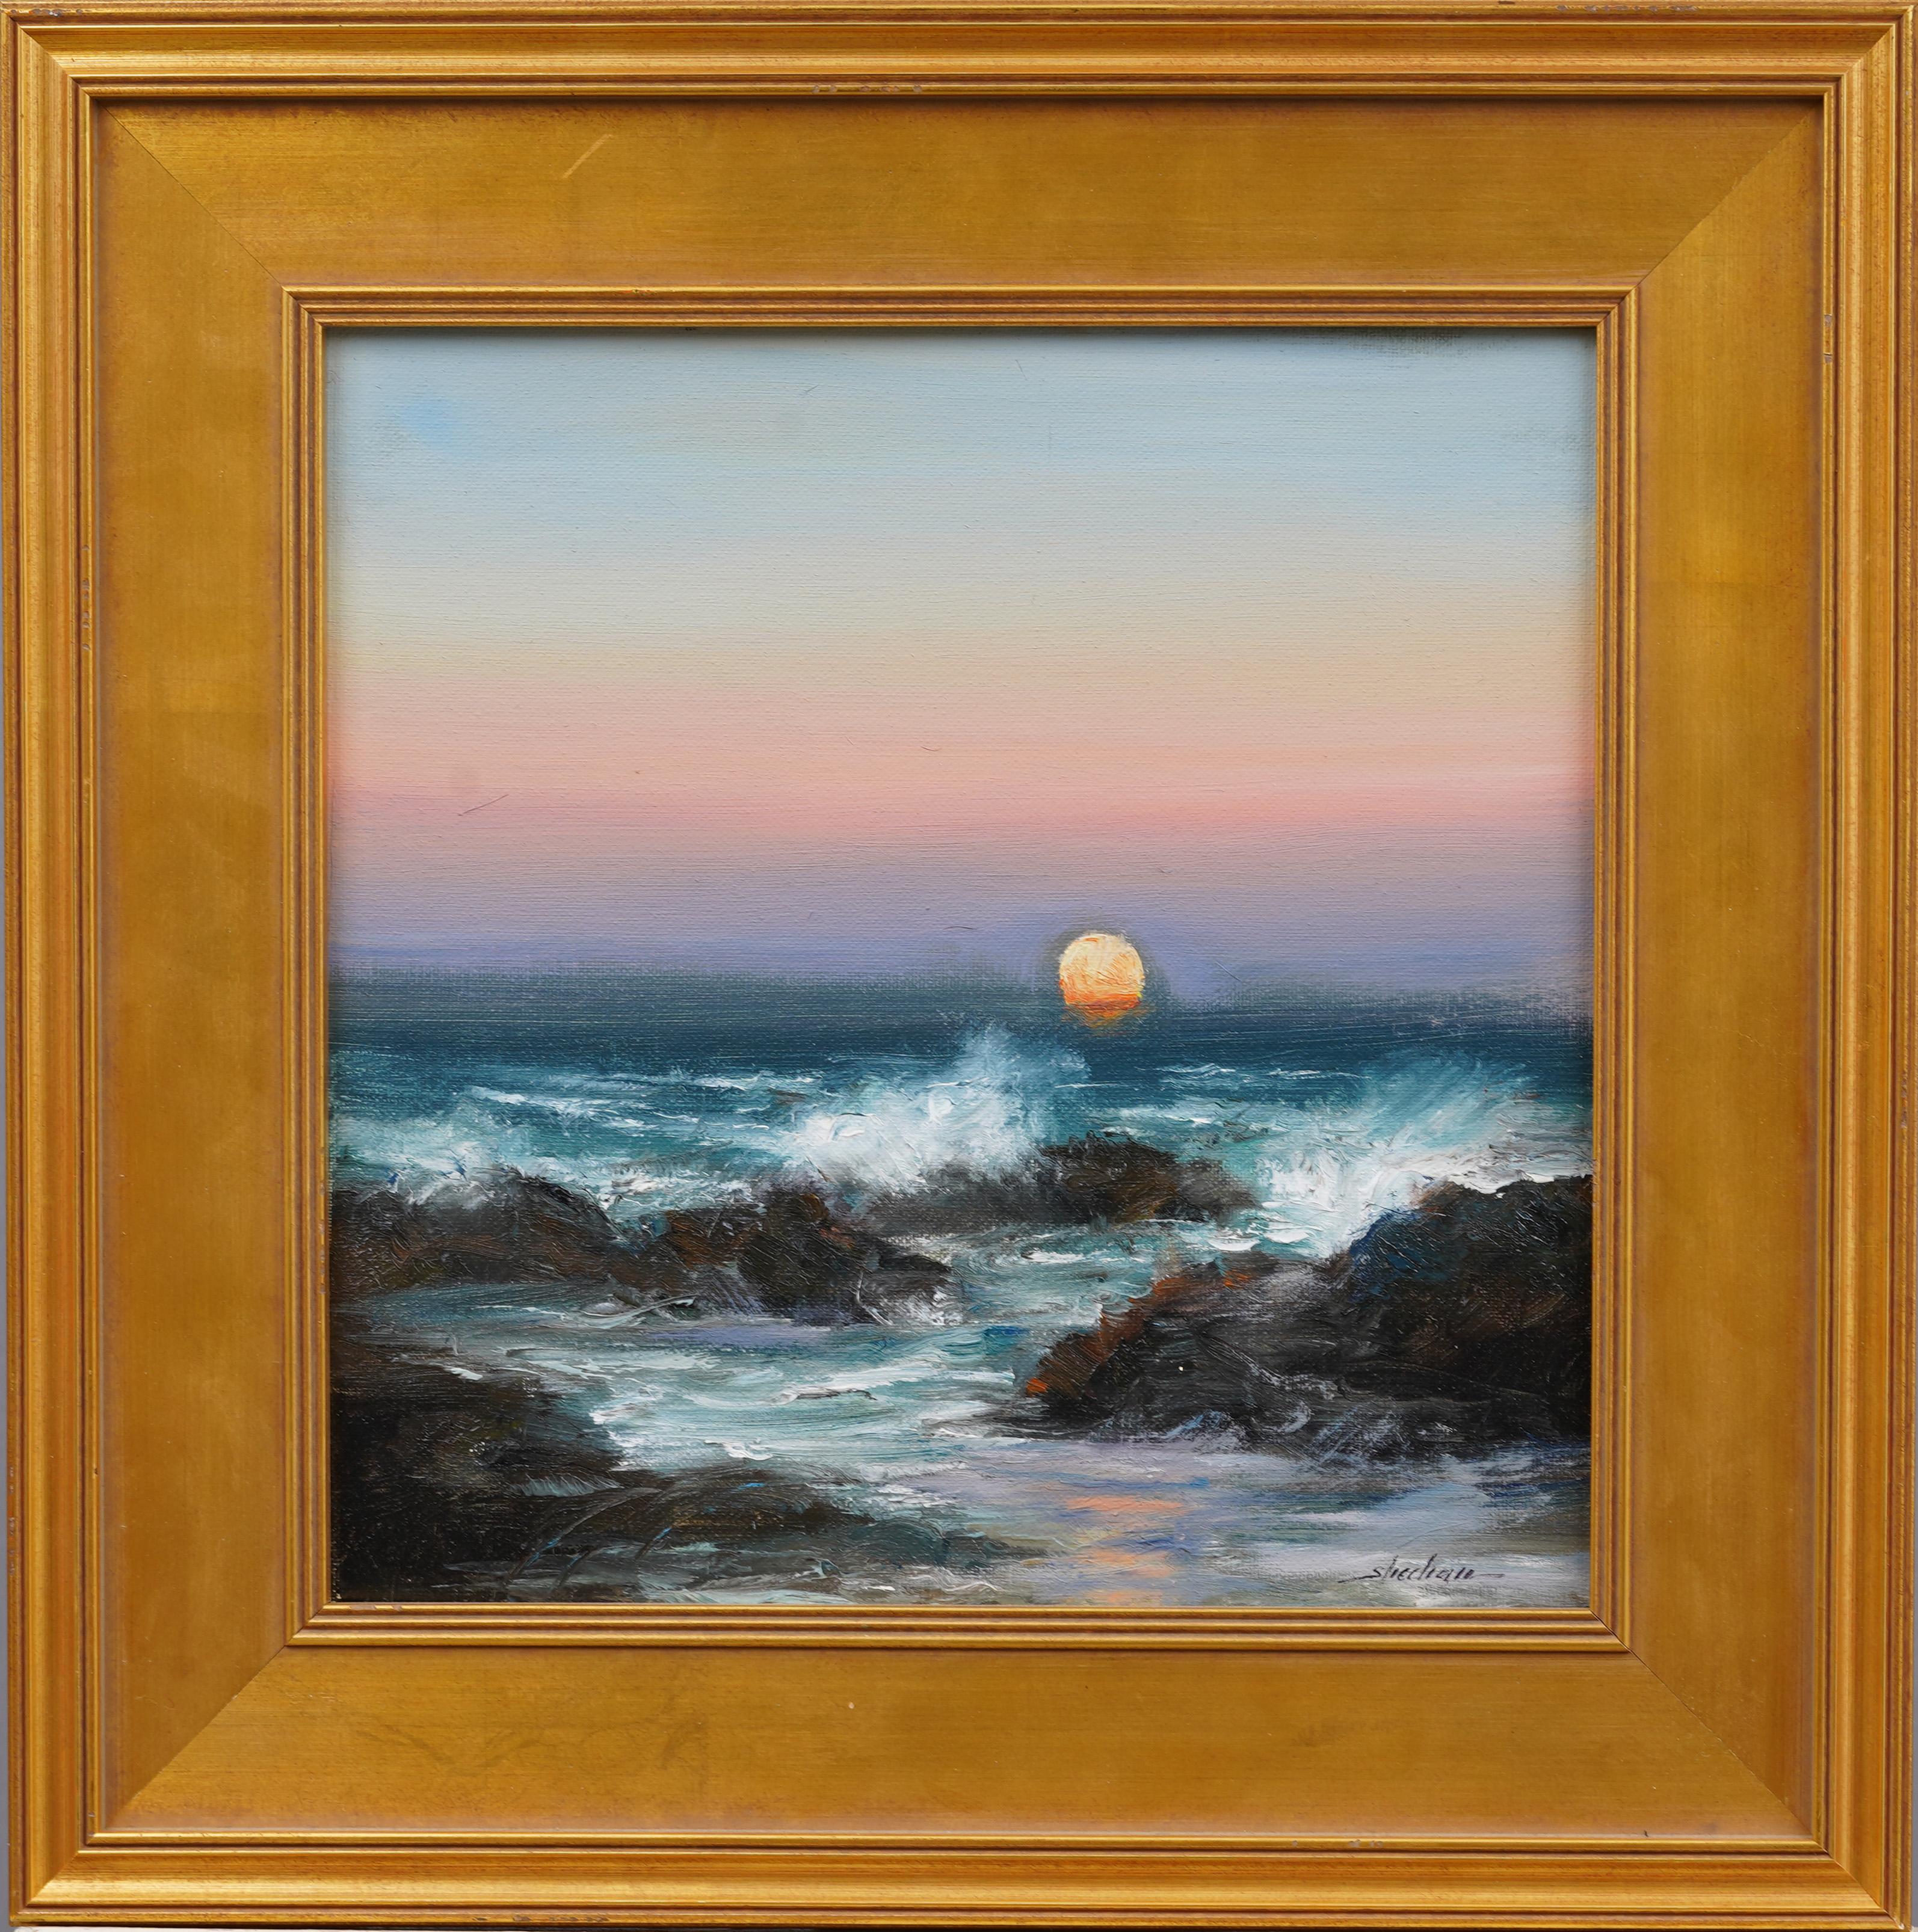 Landscape Painting Dennis Sheehan - "Surf Spray" Peinture impressionniste américaine de la Nouvelle-Angleterre, coucher de soleil sur la côte, paysage marin